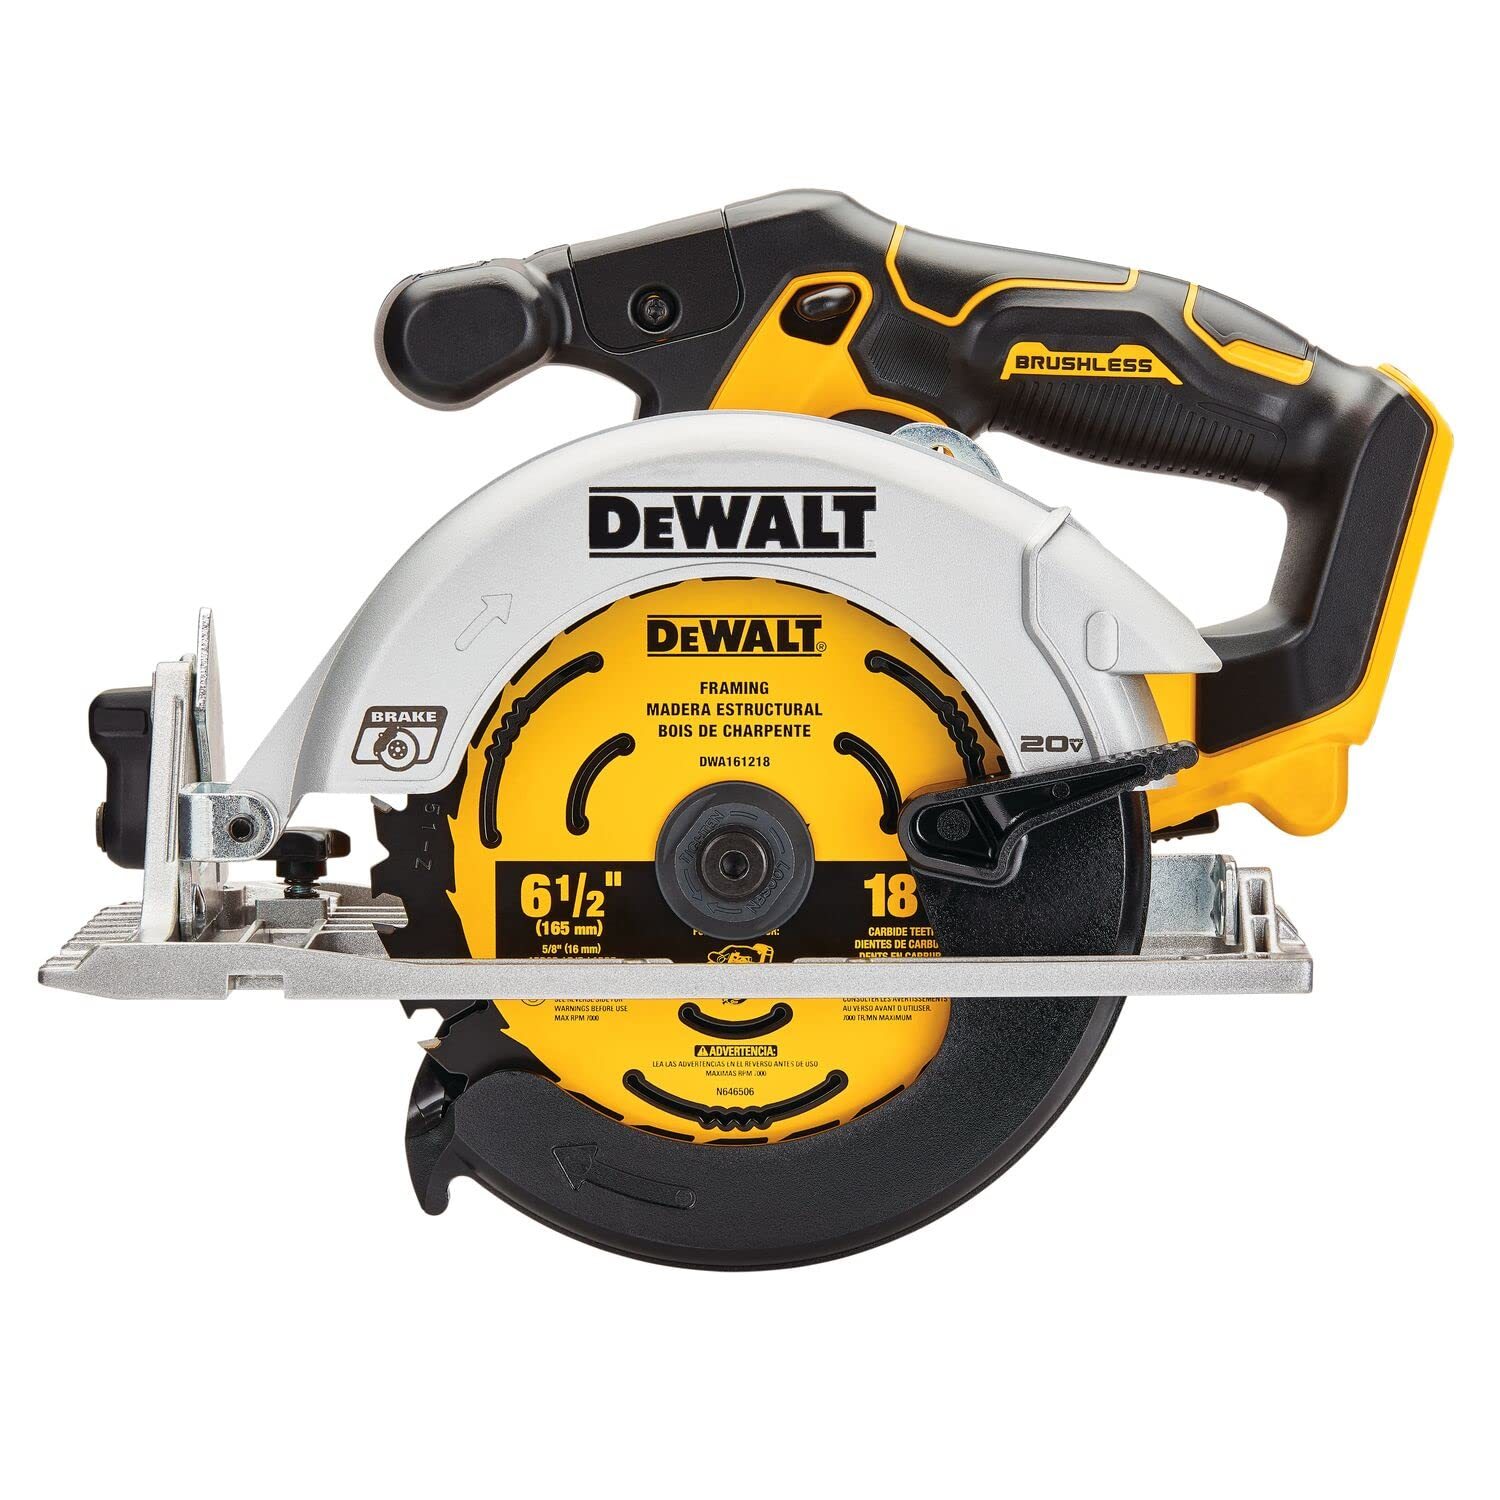 DEWALT 20V MAX* Circular Saw, 6-1/2-Inch, and similar items